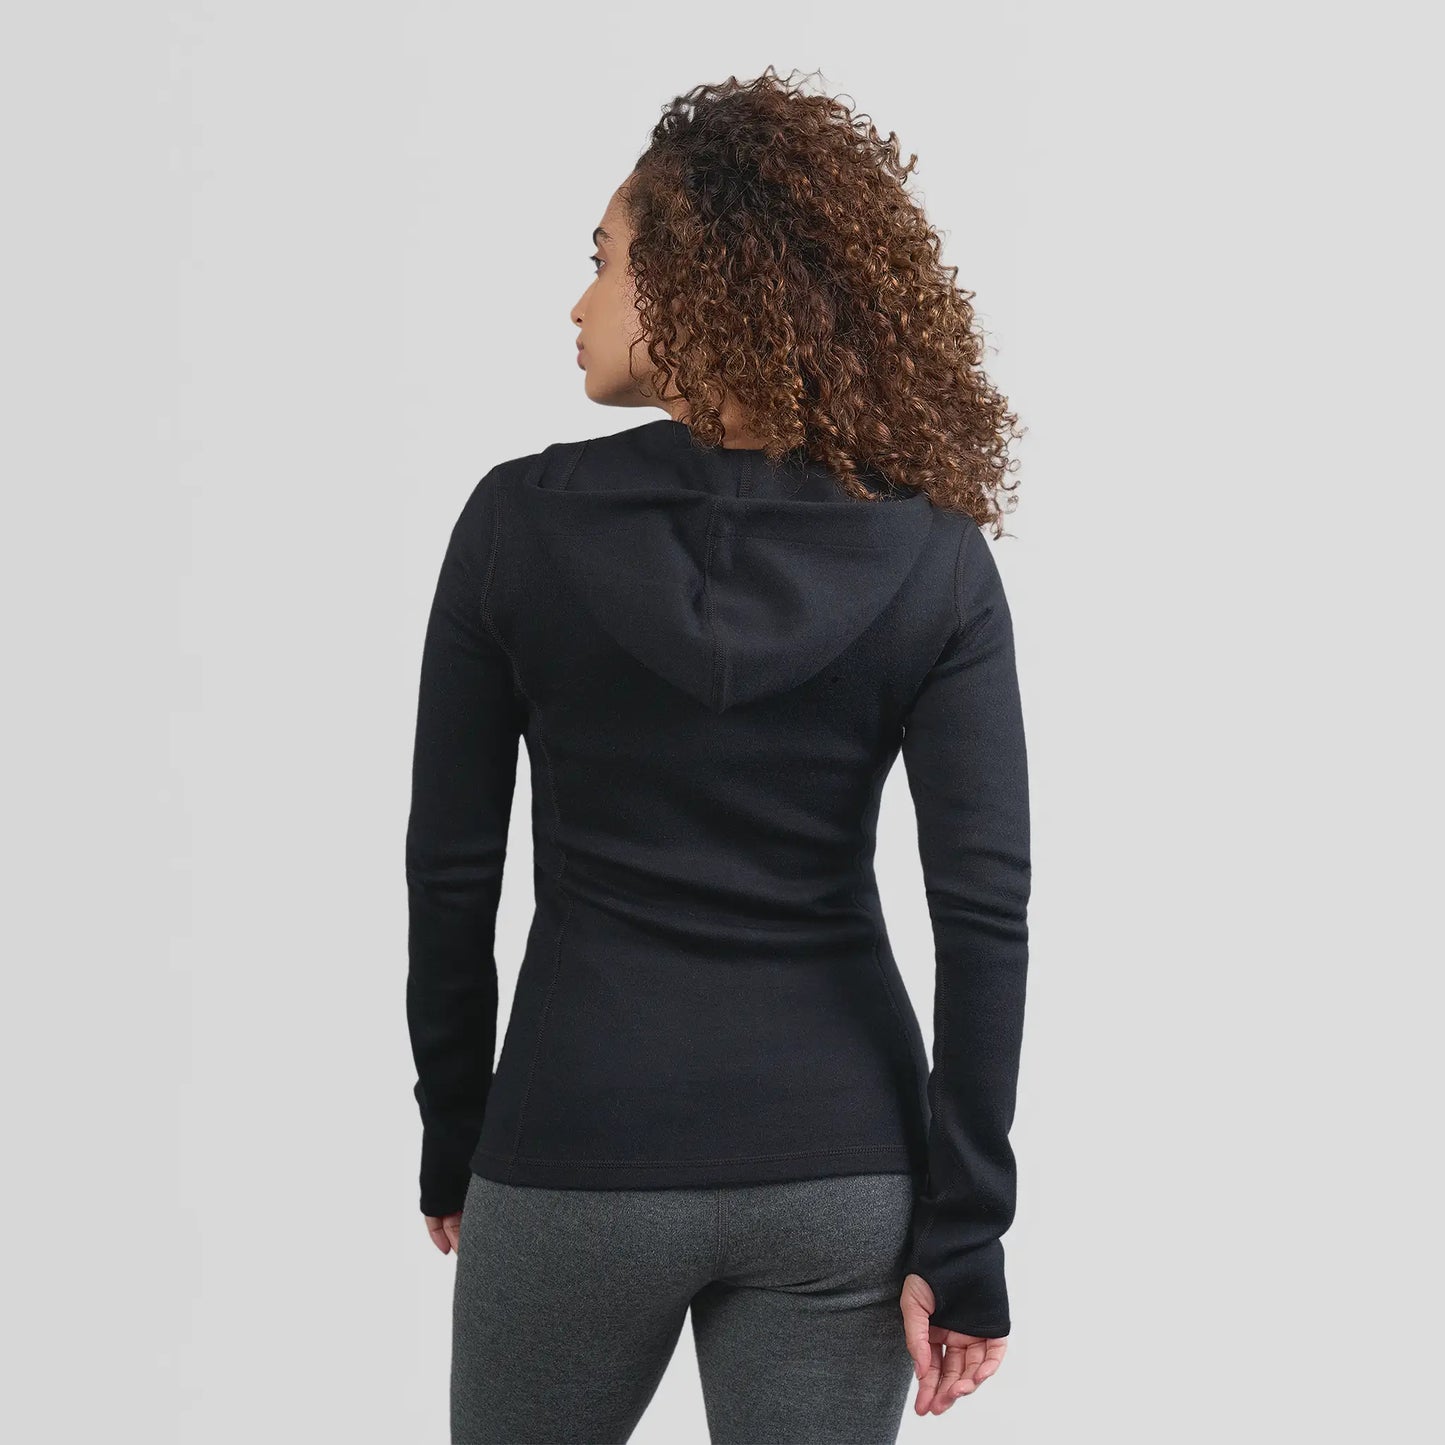 womens antiodor hoodie jacket full zip color black